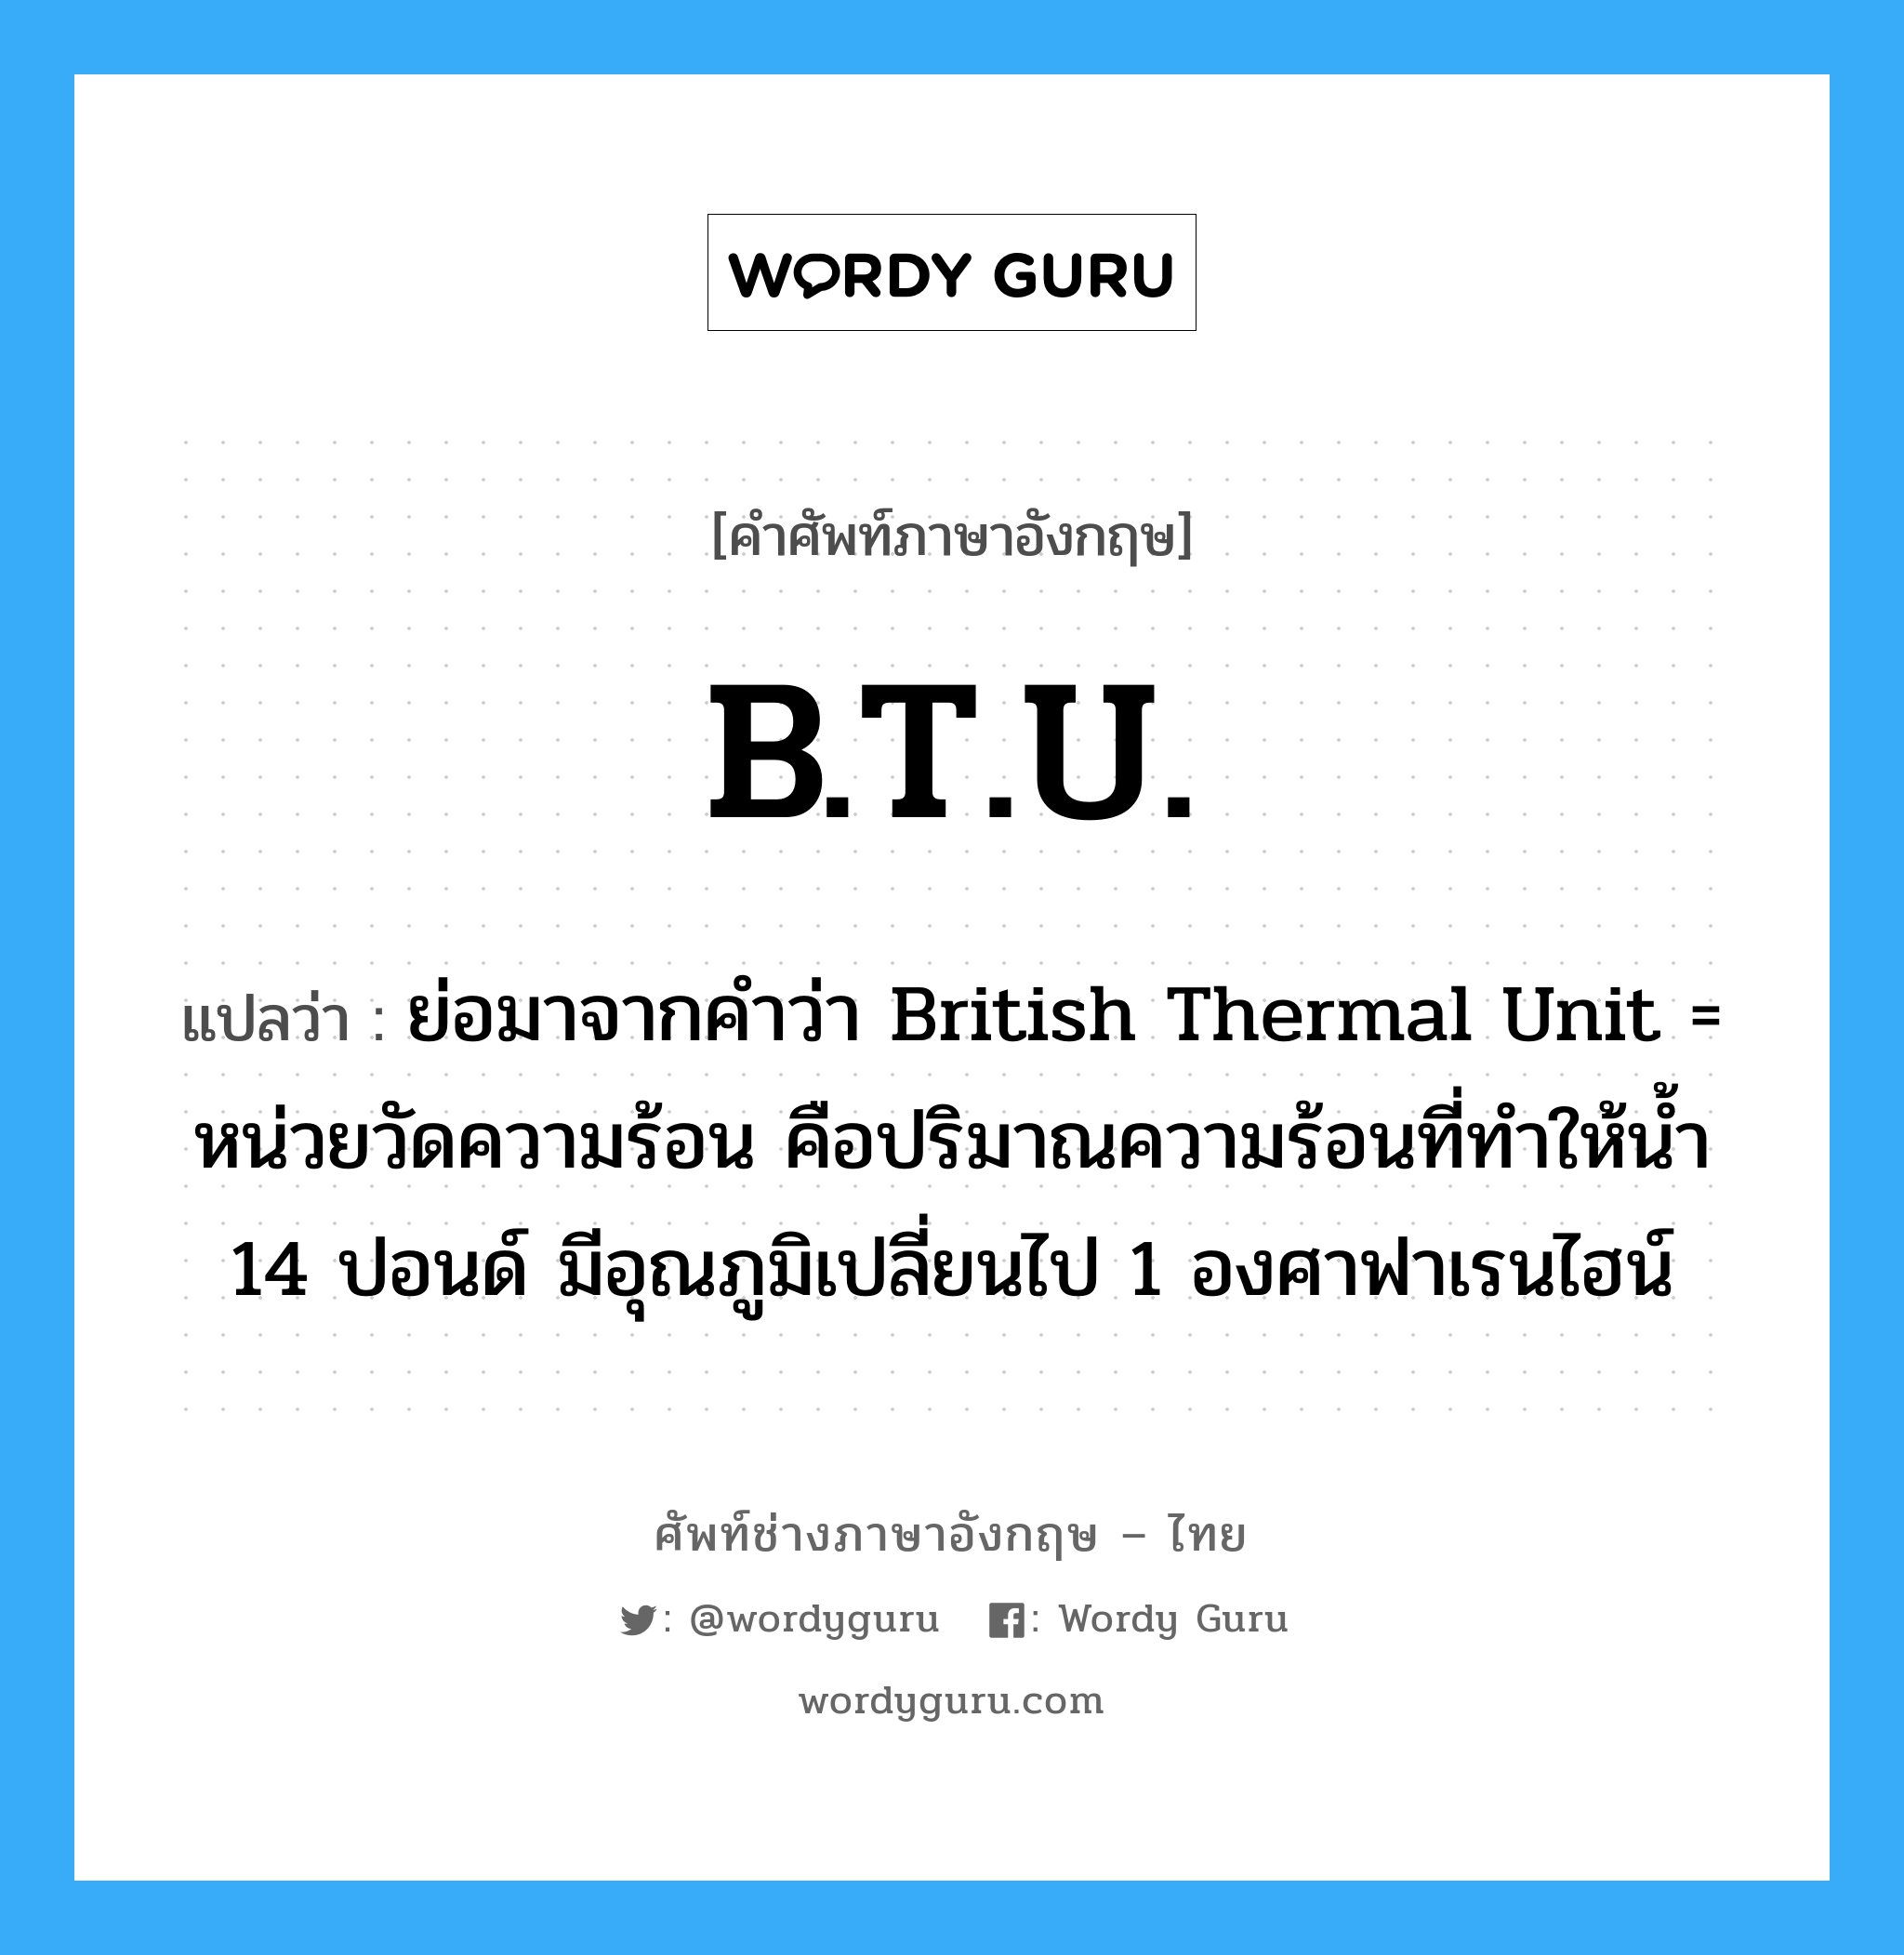 ย่อมาจากคำว่า British Thermal Unit = หน่วยวัดความร้อน คือปริมาณความร้อนที่ทำให้น้ำ 14 ปอนด์ มีอุณภูมิเปลี่ยนไป 1 องศาฟาเรนไฮน์ ภาษาอังกฤษ?, คำศัพท์ช่างภาษาอังกฤษ - ไทย ย่อมาจากคำว่า British Thermal Unit = หน่วยวัดความร้อน คือปริมาณความร้อนที่ทำให้น้ำ 14 ปอนด์ มีอุณภูมิเปลี่ยนไป 1 องศาฟาเรนไฮน์ คำศัพท์ภาษาอังกฤษ ย่อมาจากคำว่า British Thermal Unit = หน่วยวัดความร้อน คือปริมาณความร้อนที่ทำให้น้ำ 14 ปอนด์ มีอุณภูมิเปลี่ยนไป 1 องศาฟาเรนไฮน์ แปลว่า B.T.U.